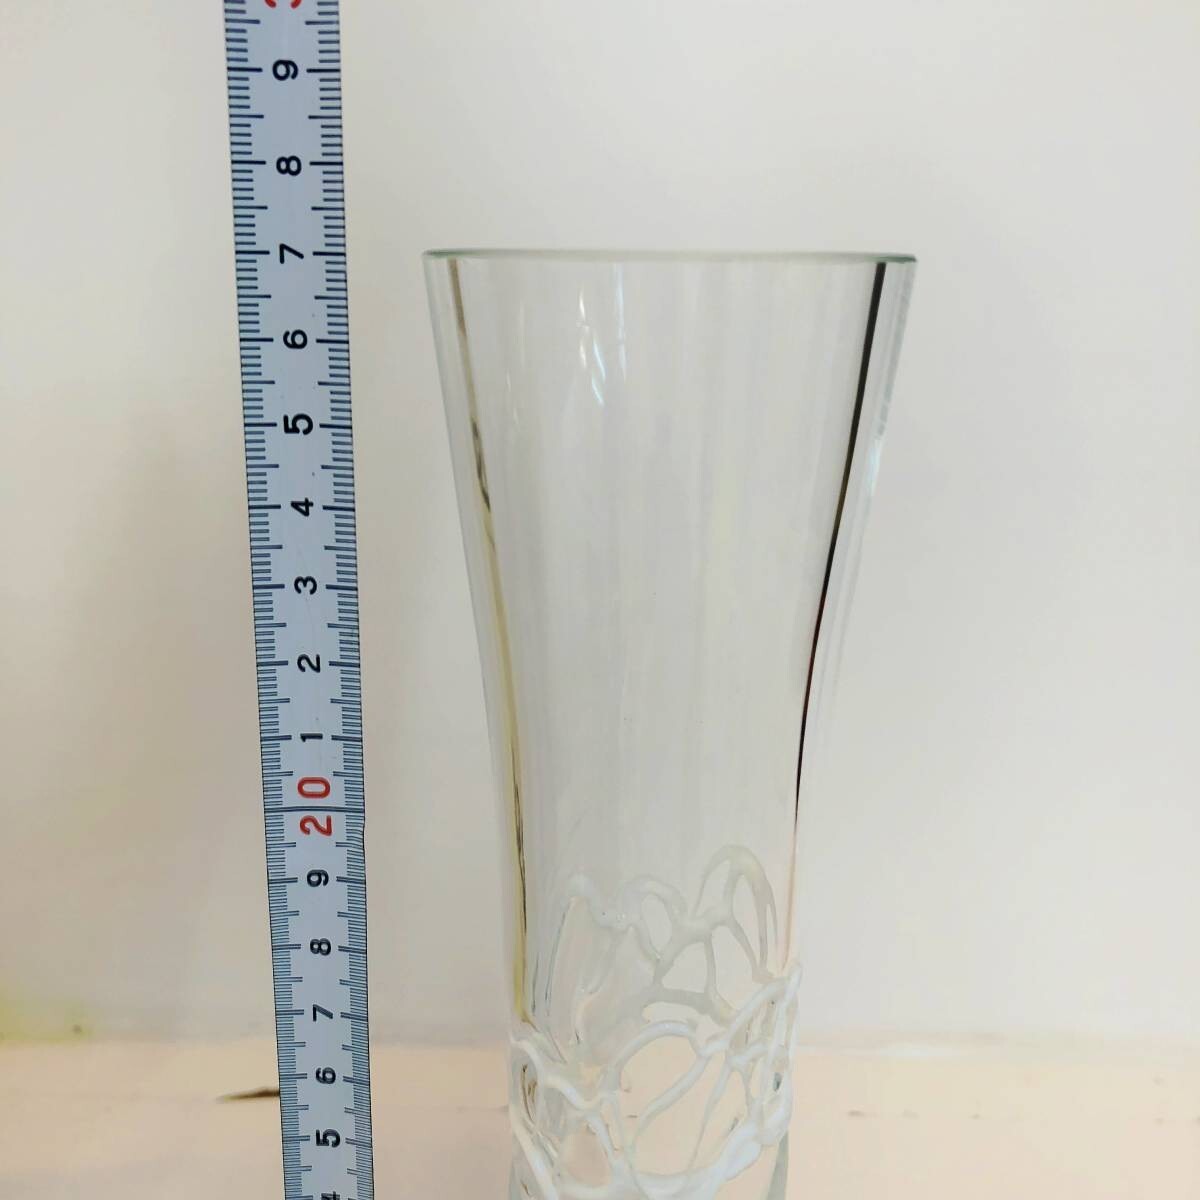  new goods 4. white LSA international flower base vase hand made glass white Izzi Vase 27cm Poland made G901-27